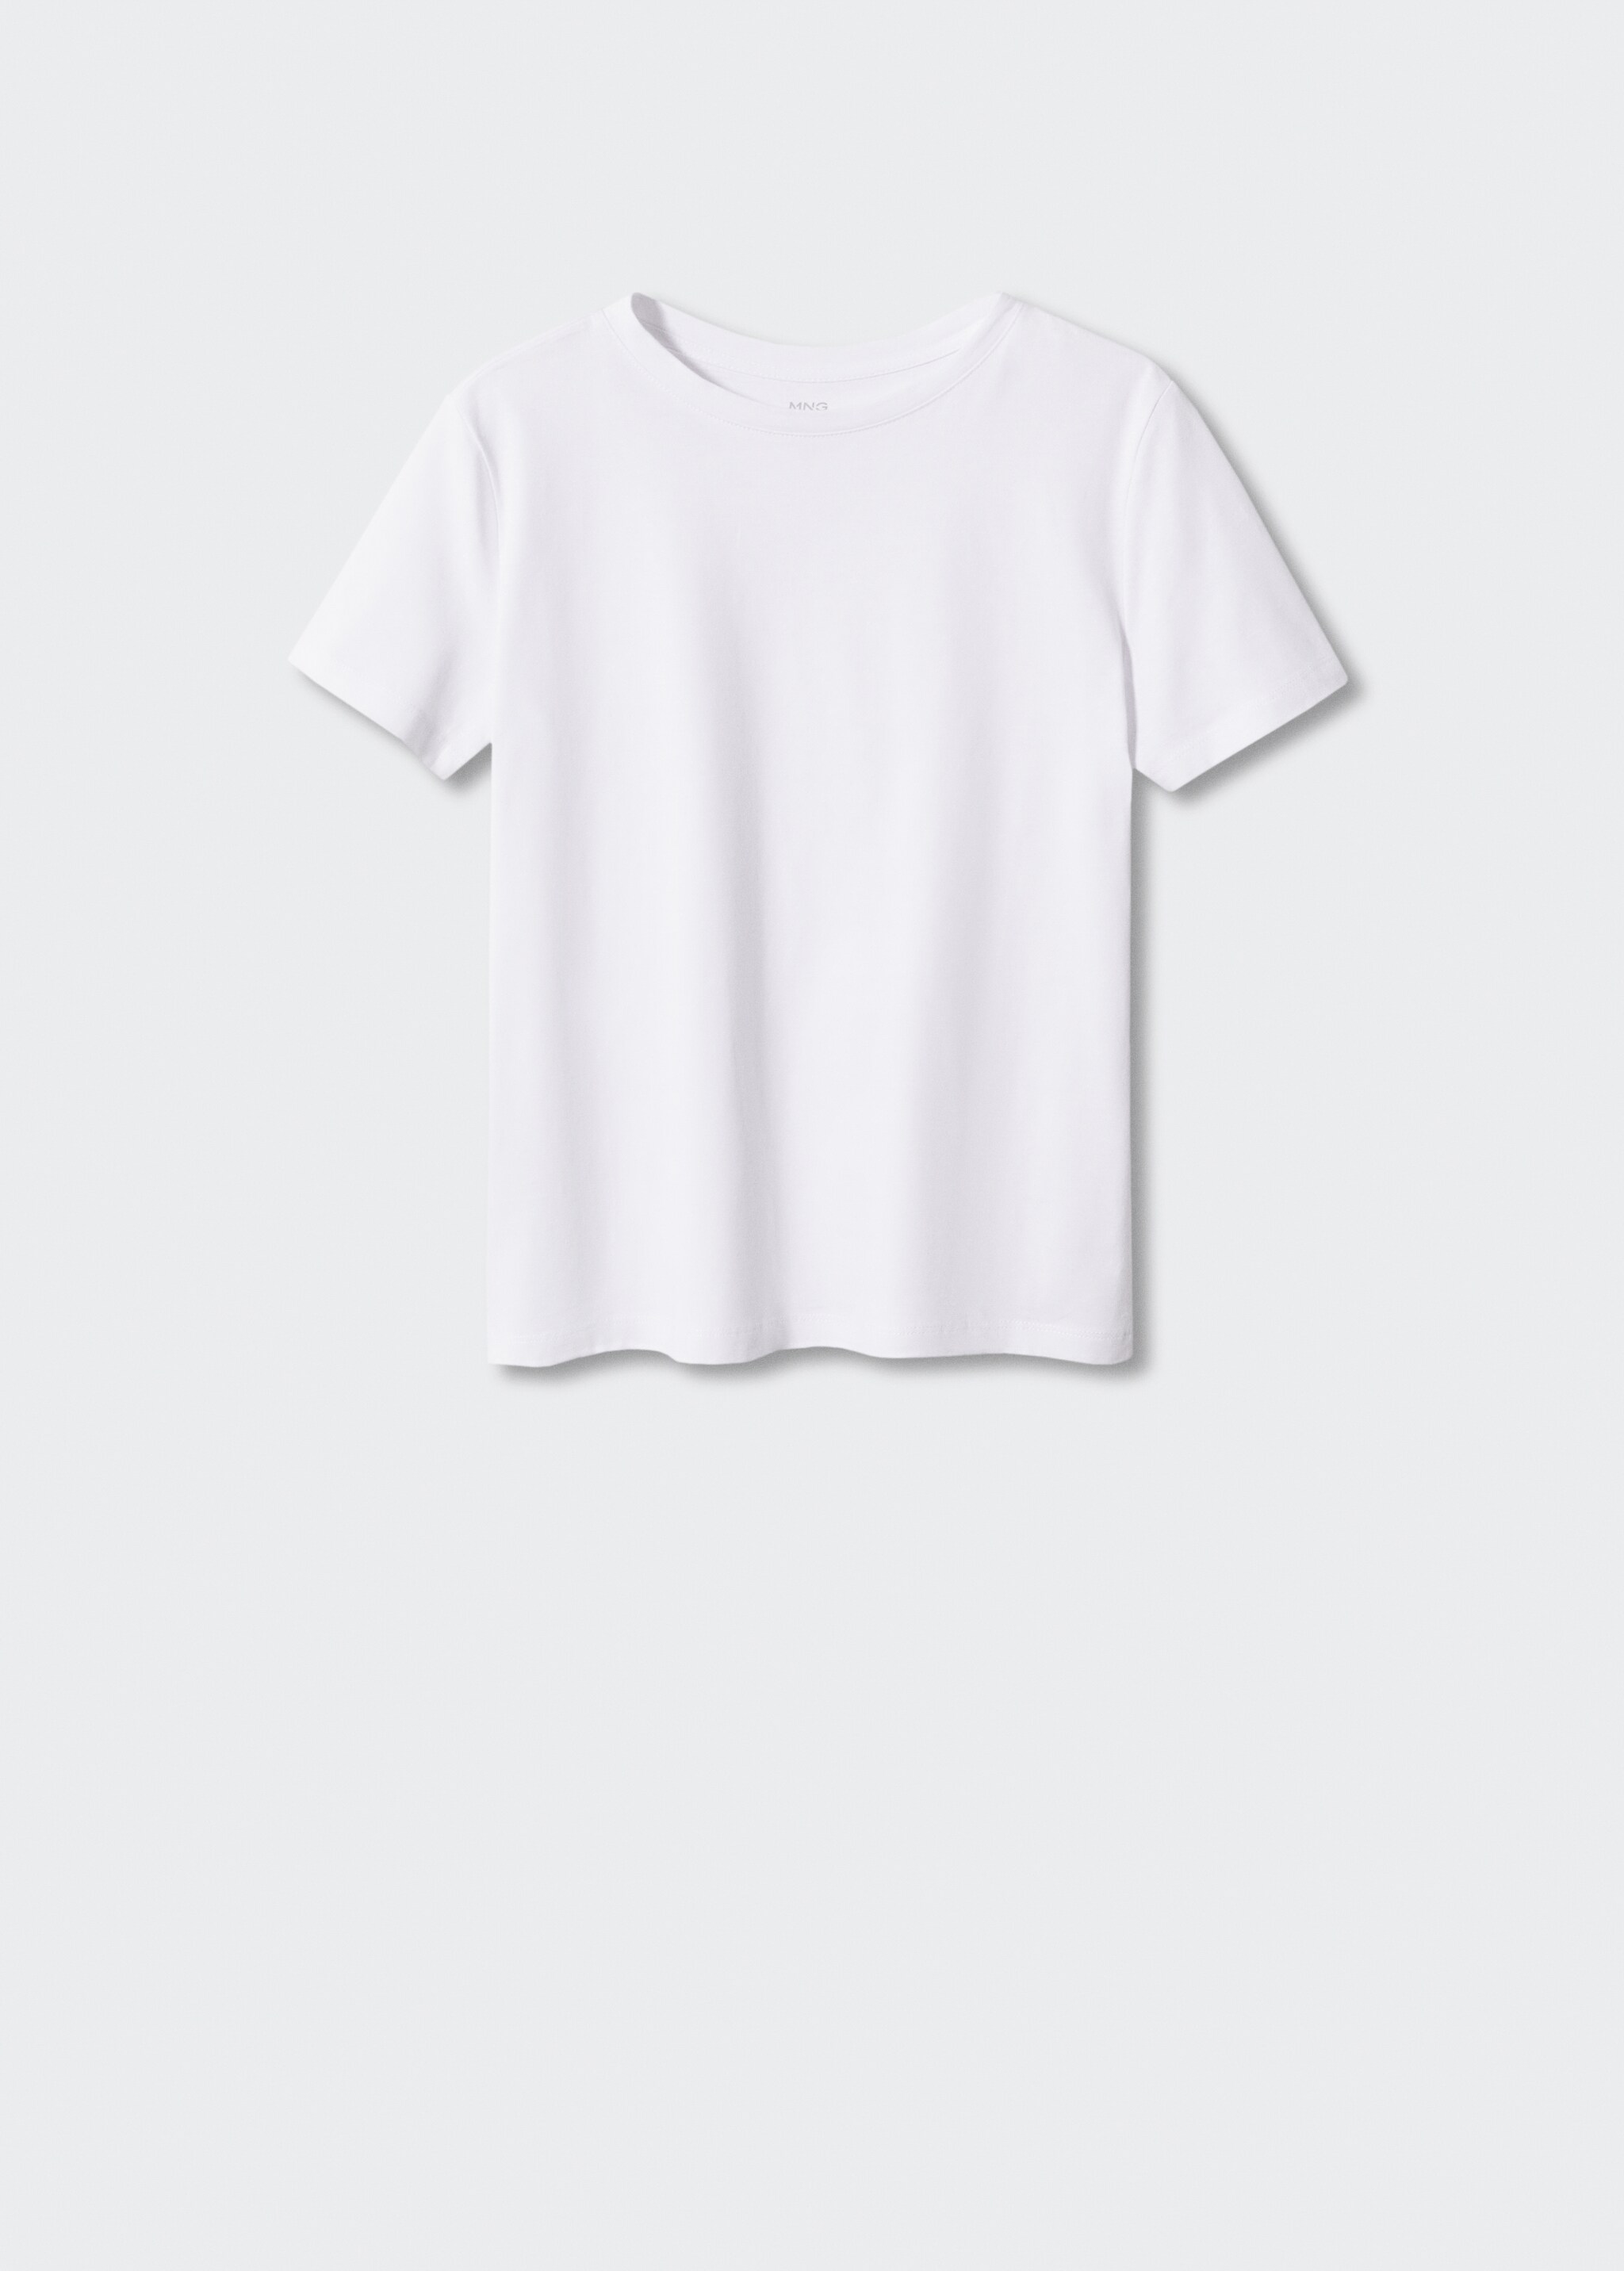 Koszulka ze 100% bawełny - Artykuł bez modela/modelki